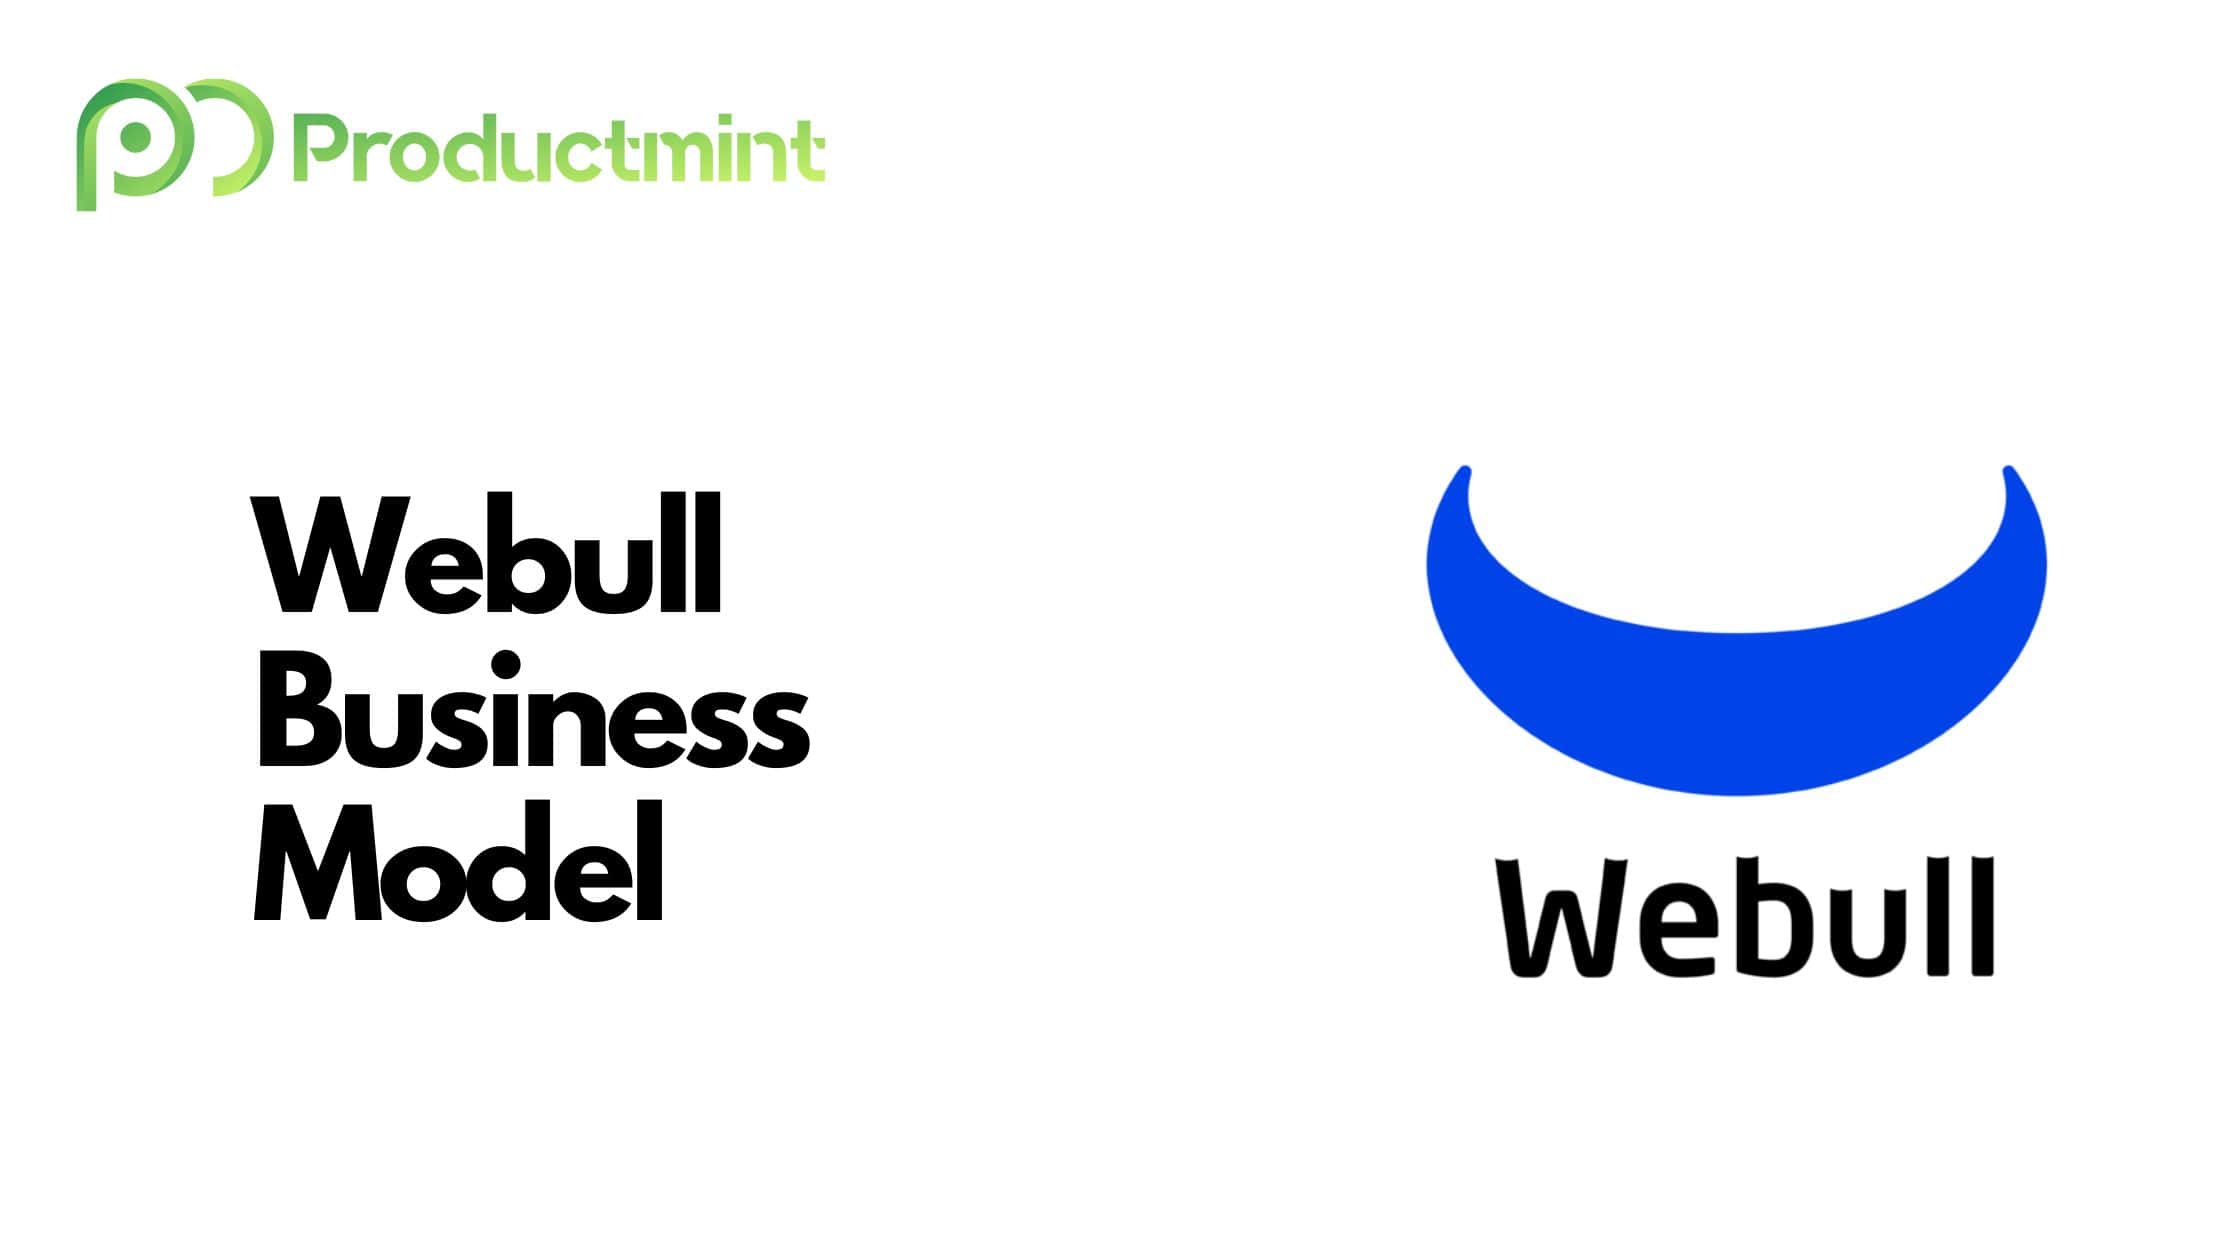 Webull Business Model